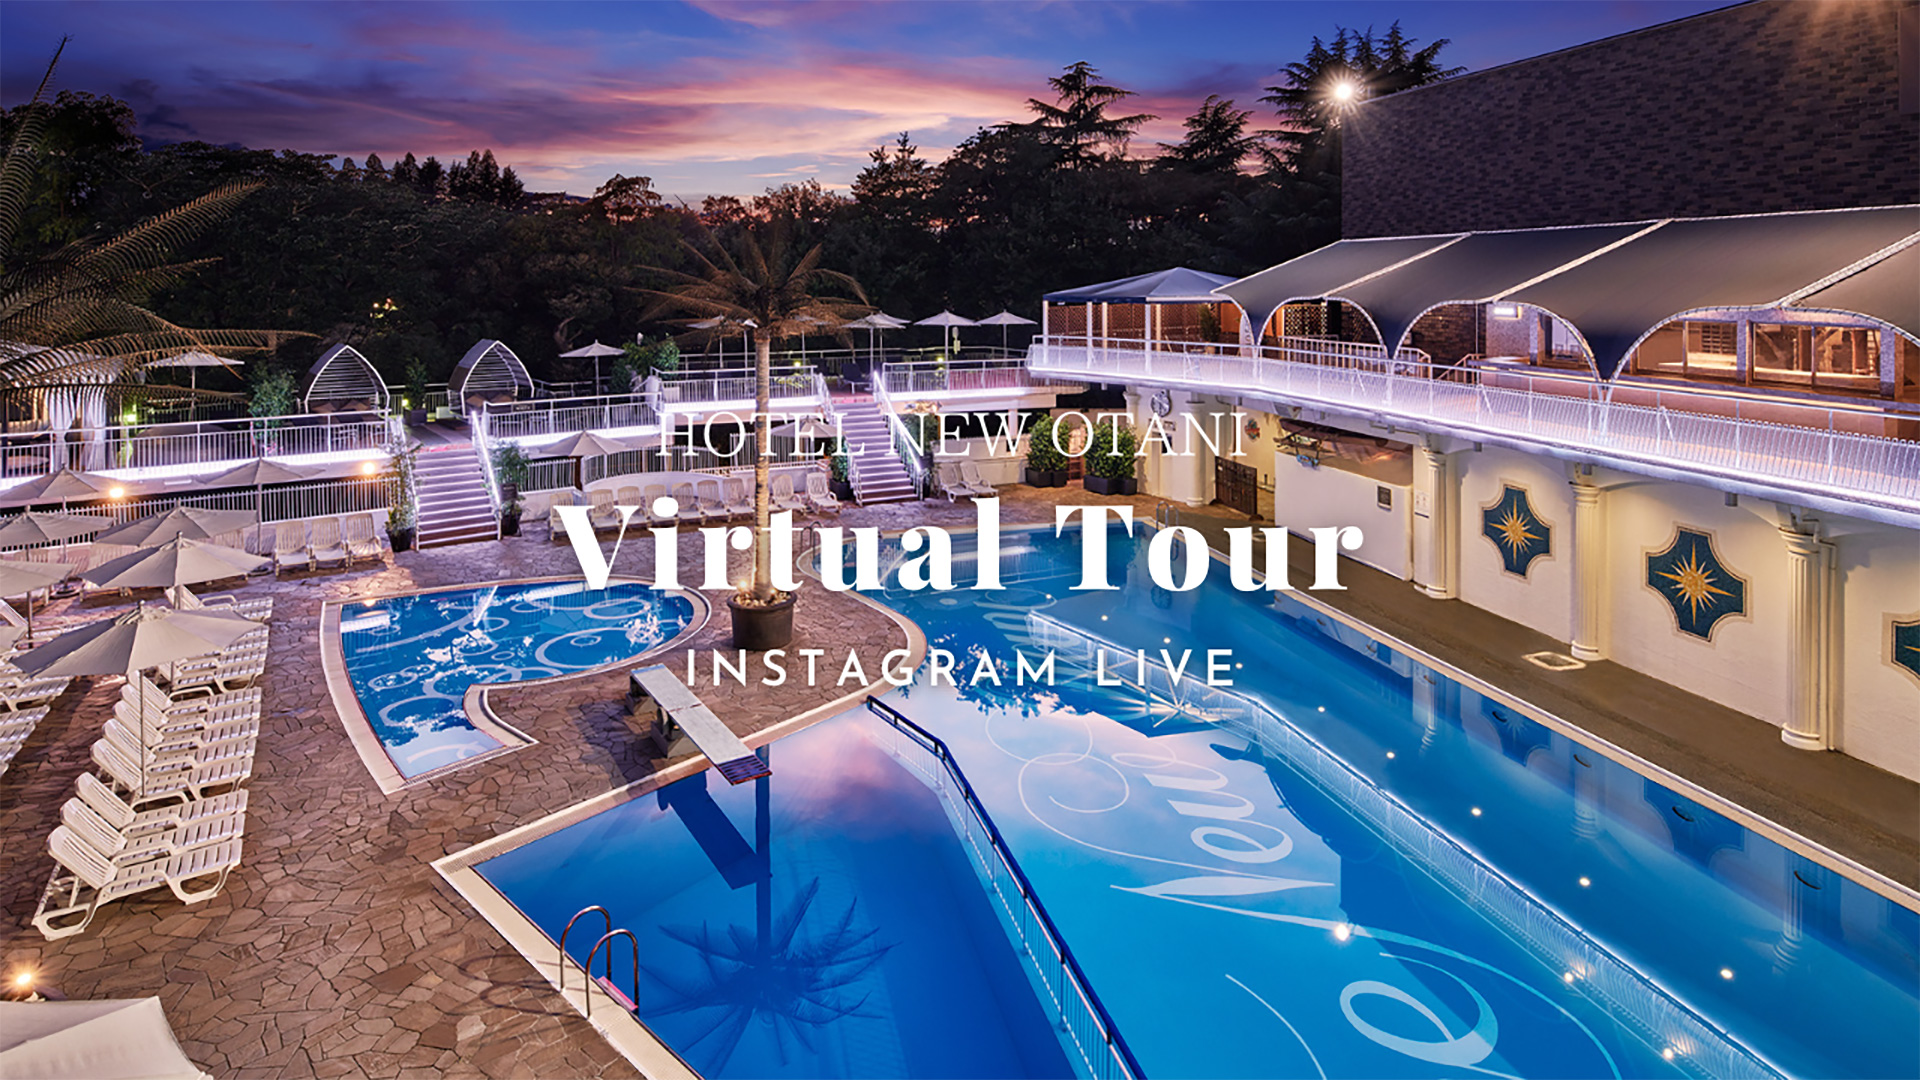 インスタライブ配信『Hotel New Otani Virtual Tour』